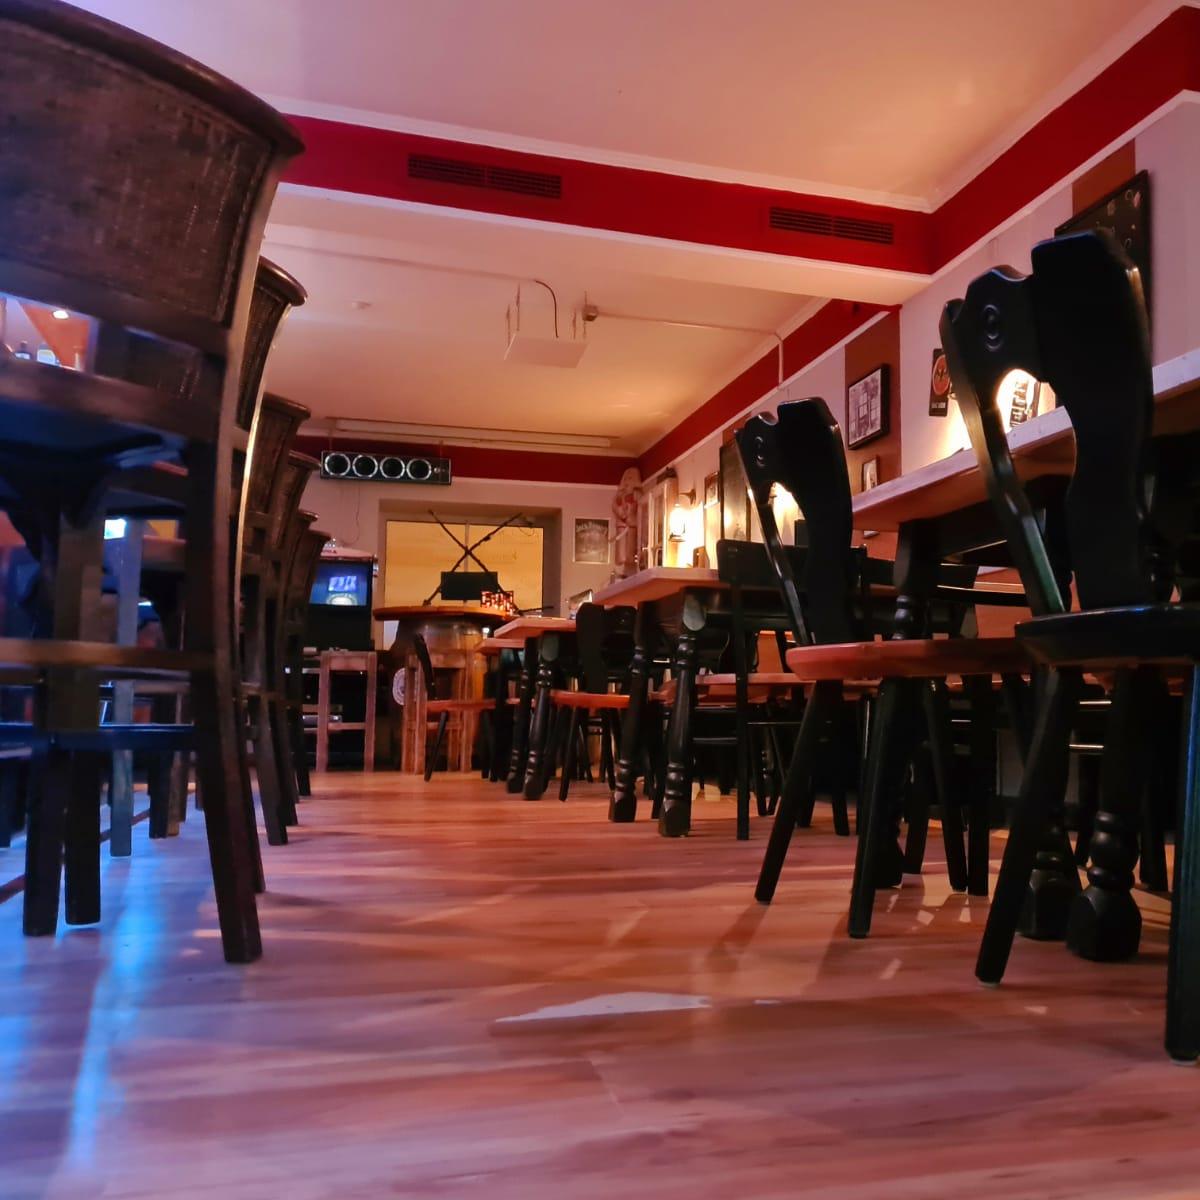 Restaurant "Schixn Bar Bistro and more" in Straubing